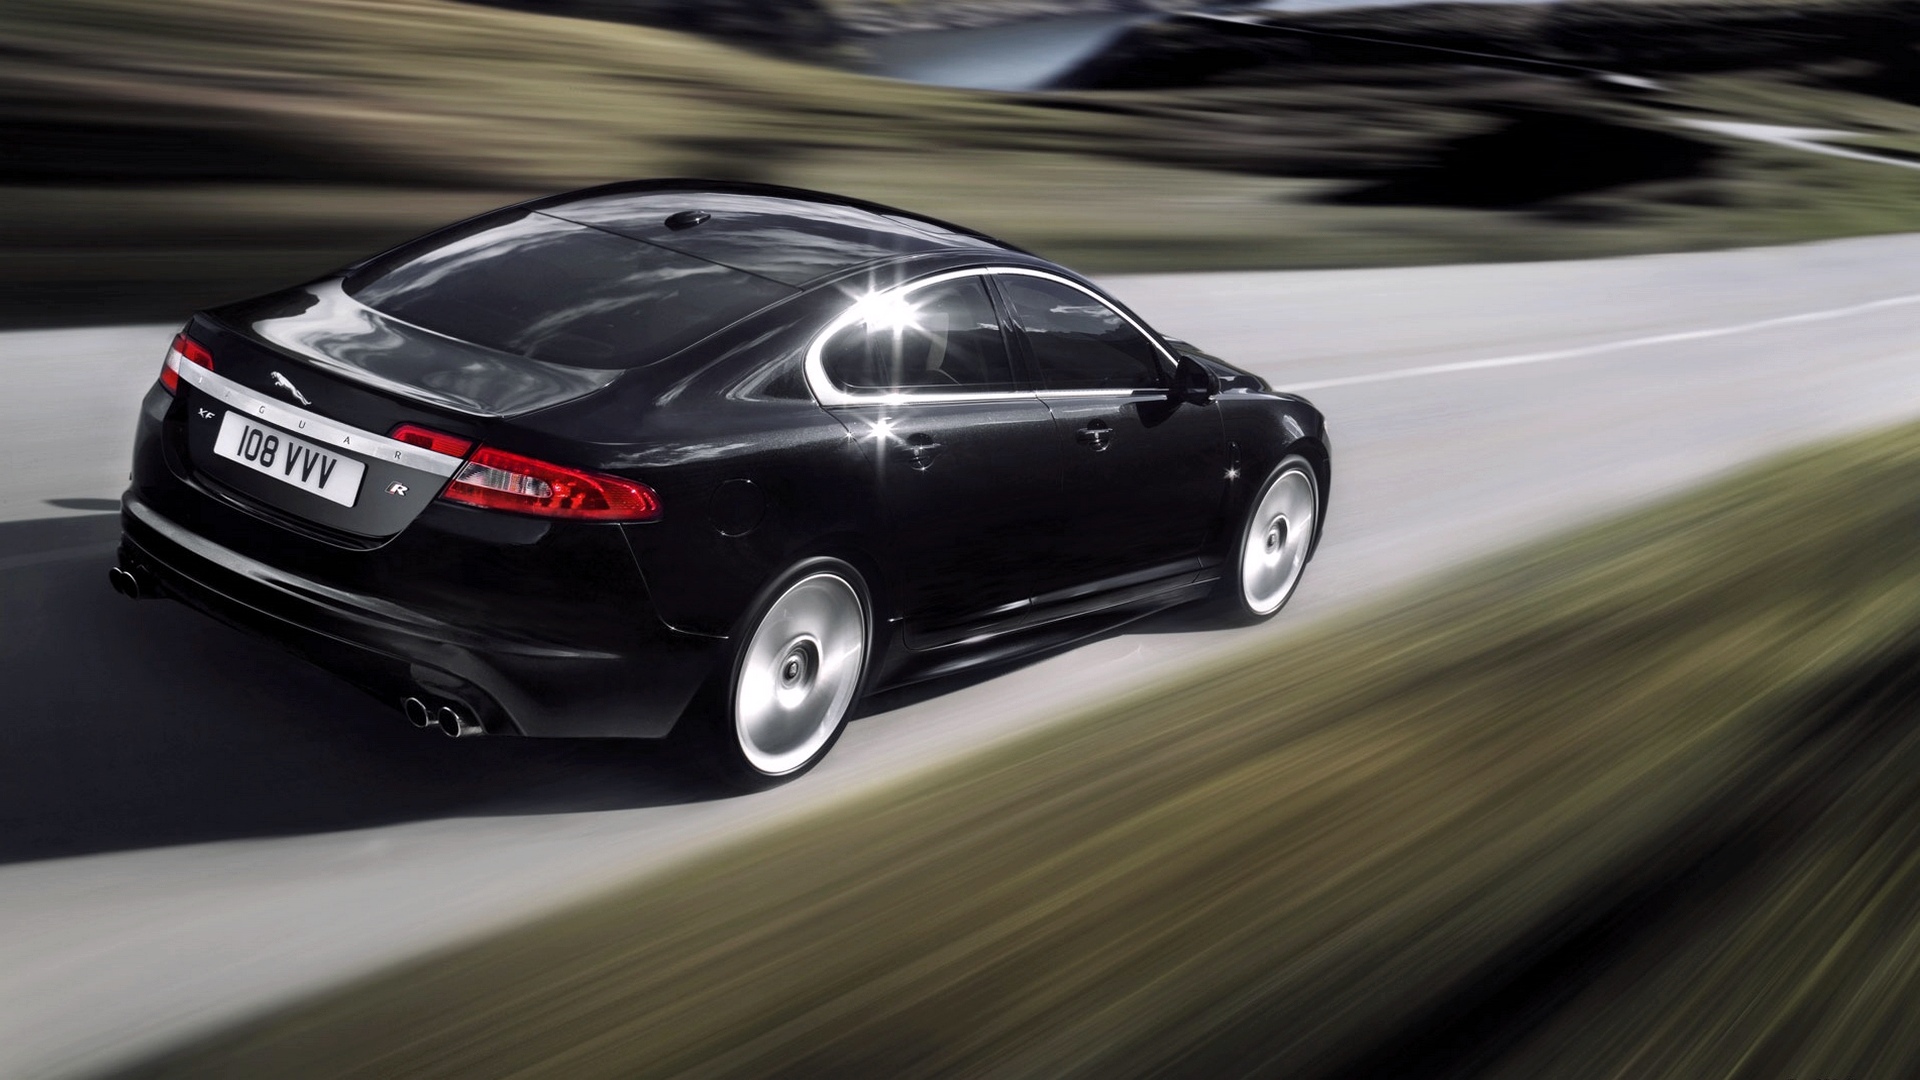 Jaguar Cars Full HD Wallpapers - JAGUAR HD 001 1 69.jpg